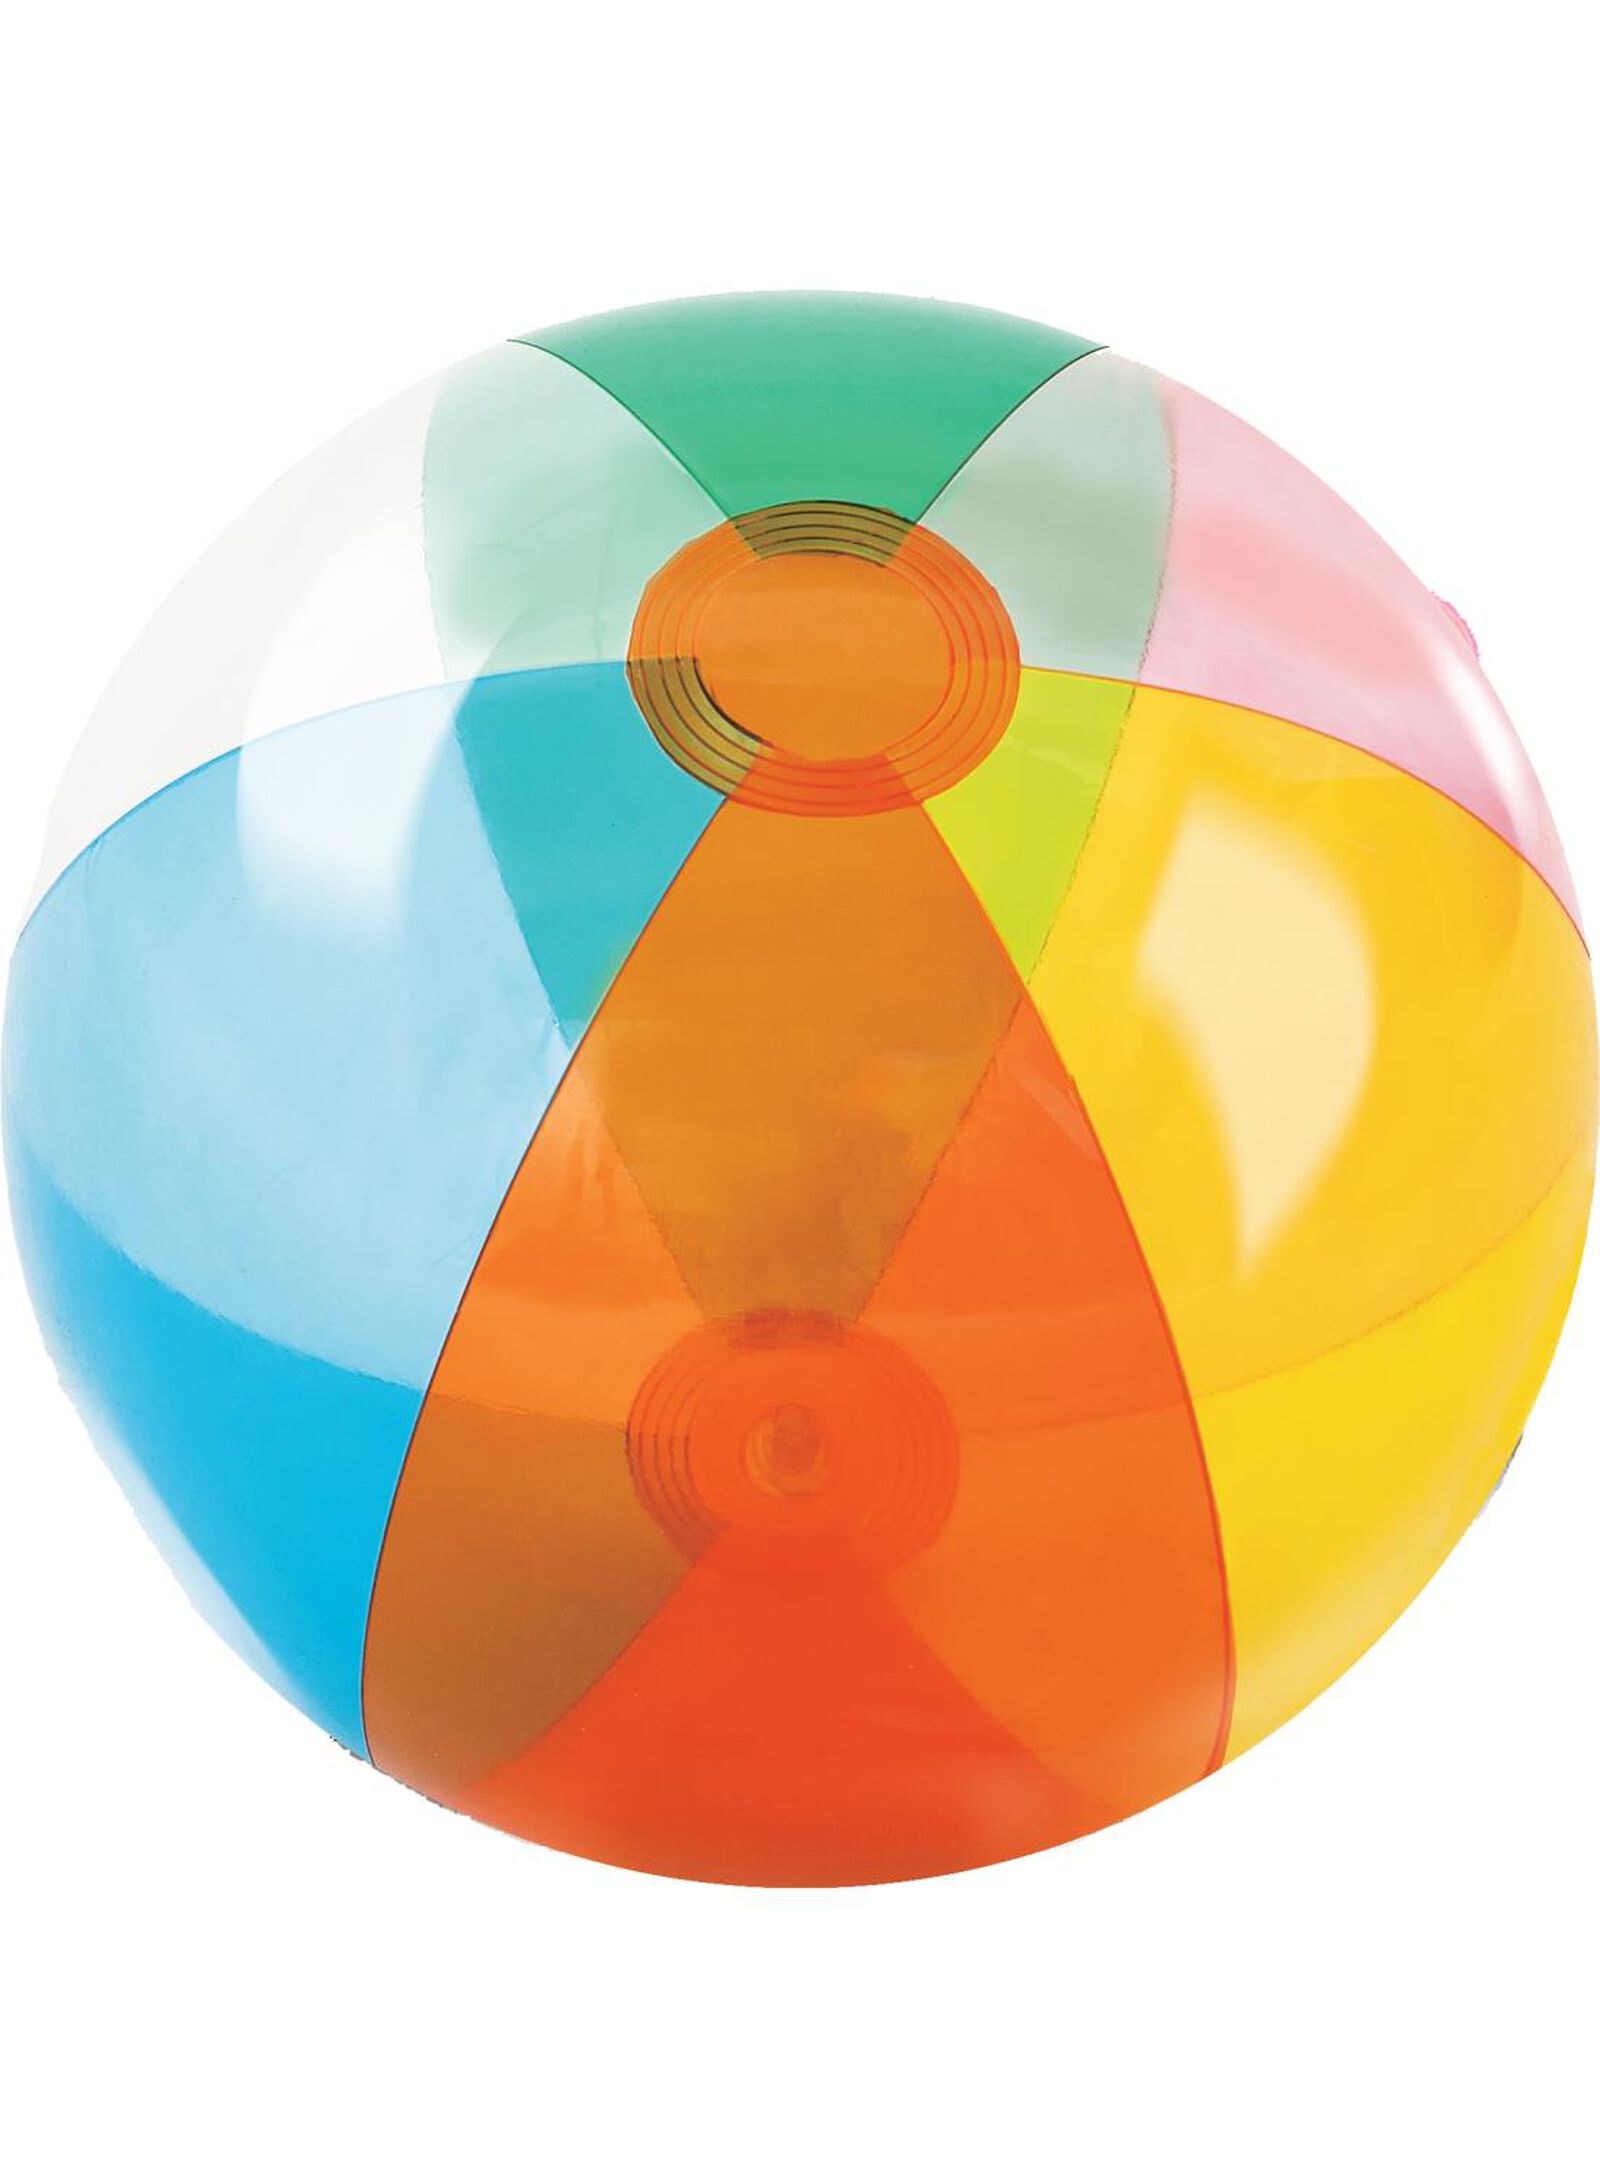 3 Pcs Ballons De Plage,Ballons De Plage Gonflables Portables Pour Adultes  Enfants,Ballons De Jeu